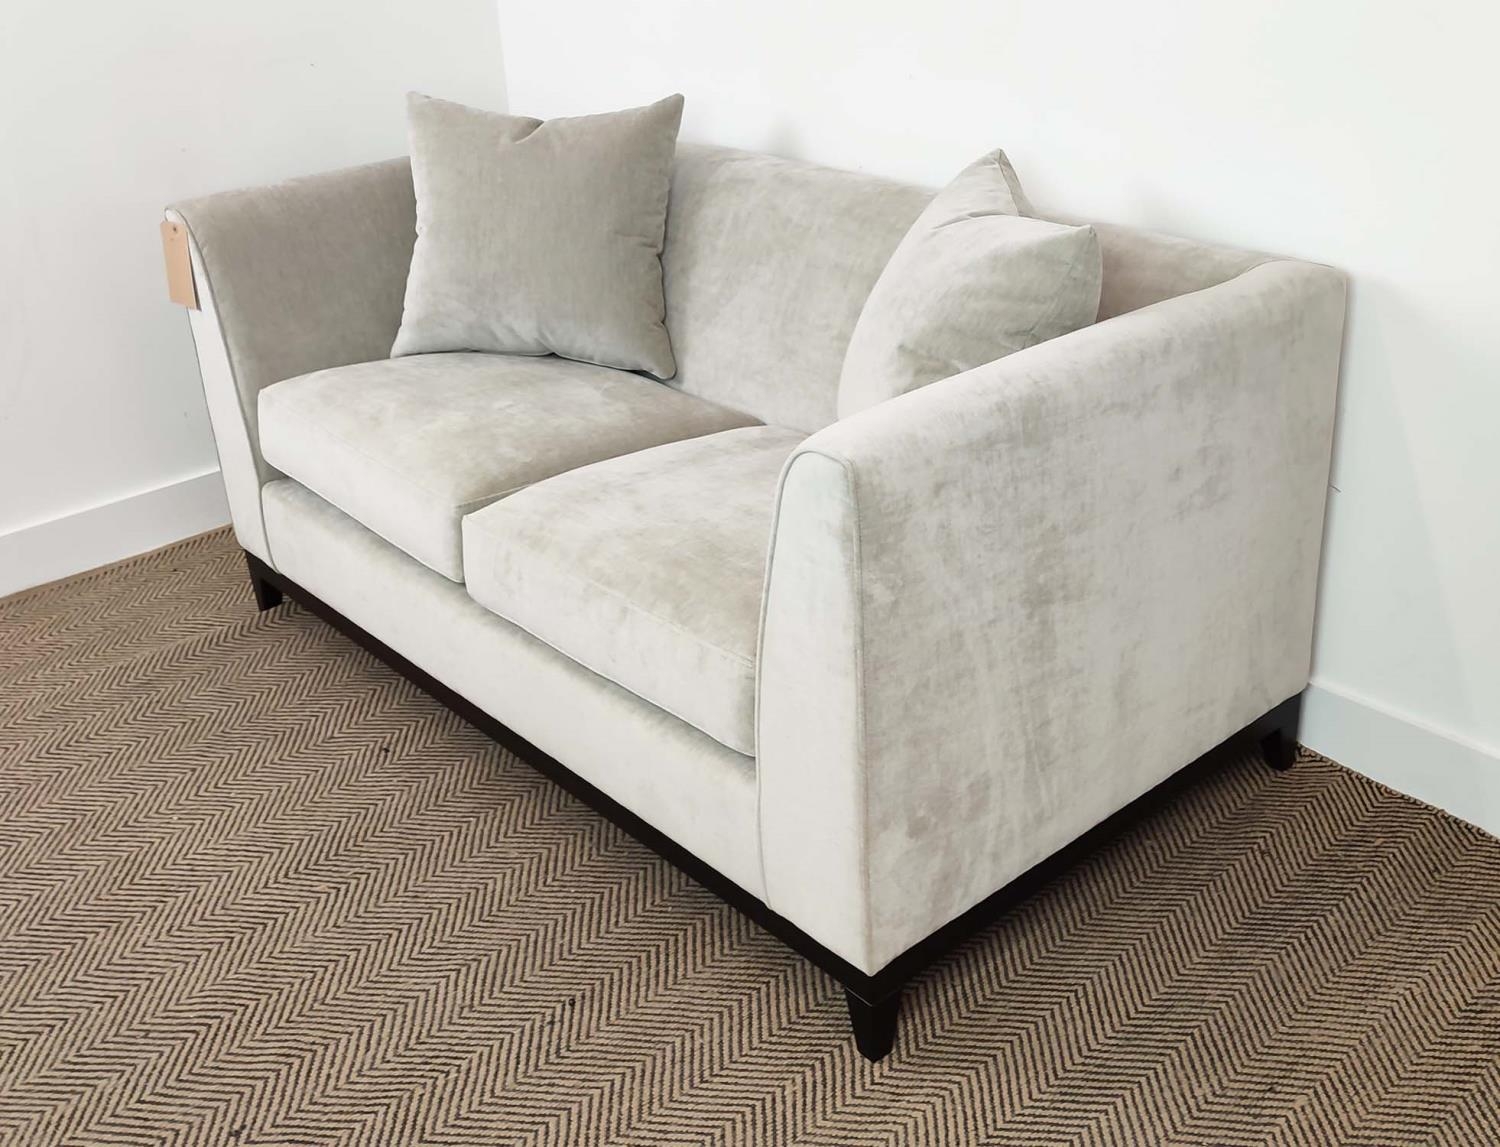 SOFA, grey fabric upholstered, ebonised supports, 160cm x 85cm x 75cm. - Image 3 of 7